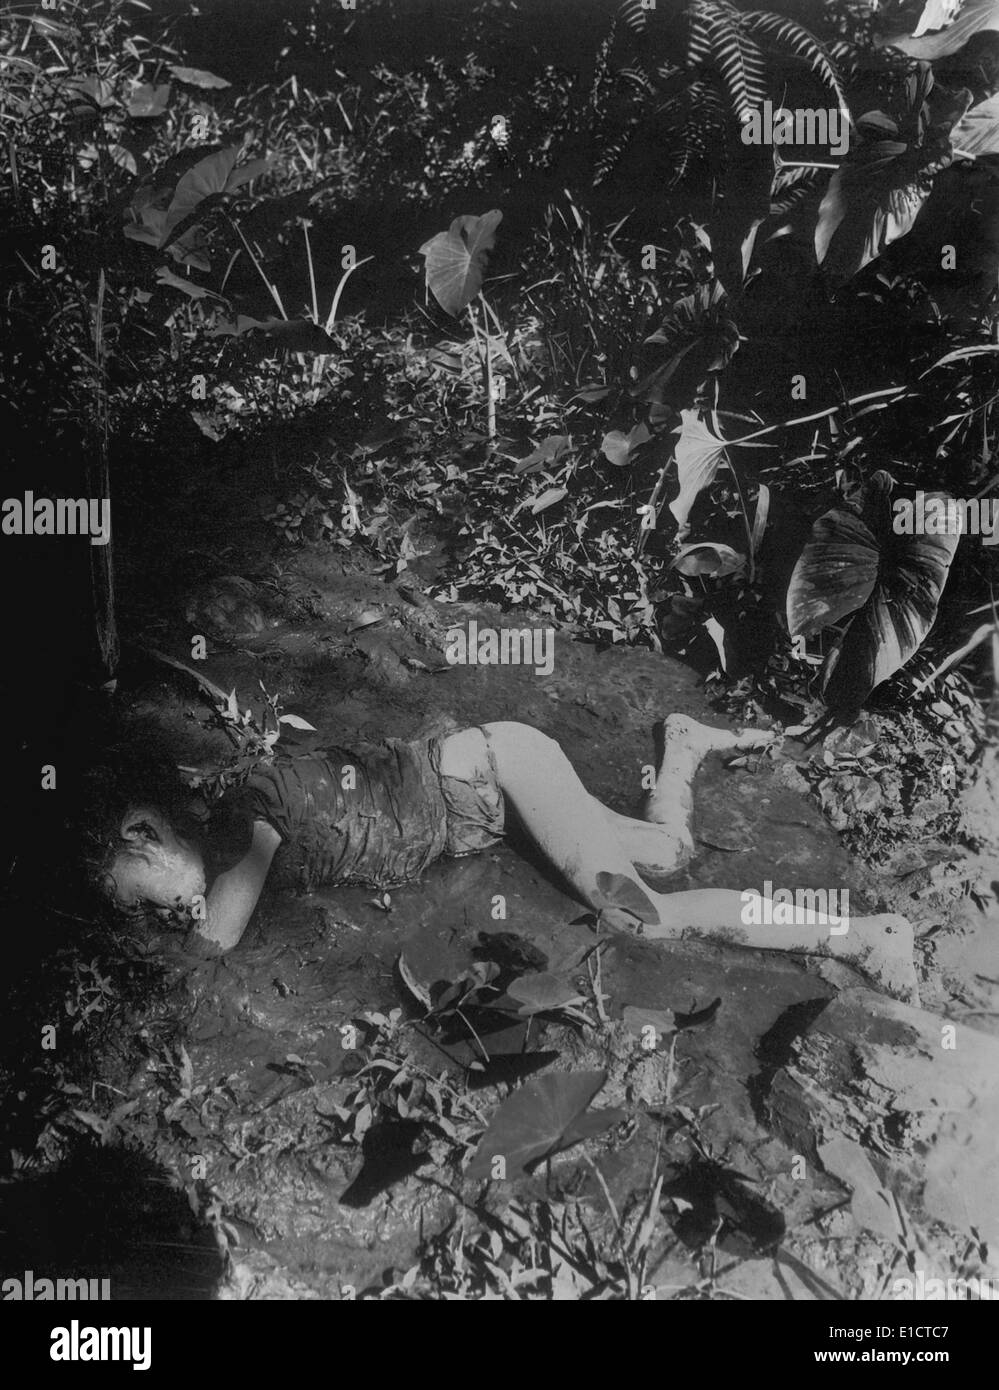 Tote Filippino Kind Verlegung im Schlamm des Creek am 9. April 1945 auf Bingas, Luzon von Japanern getötet. Philippinische Inseln. Erster Weltkrieg Stockfoto